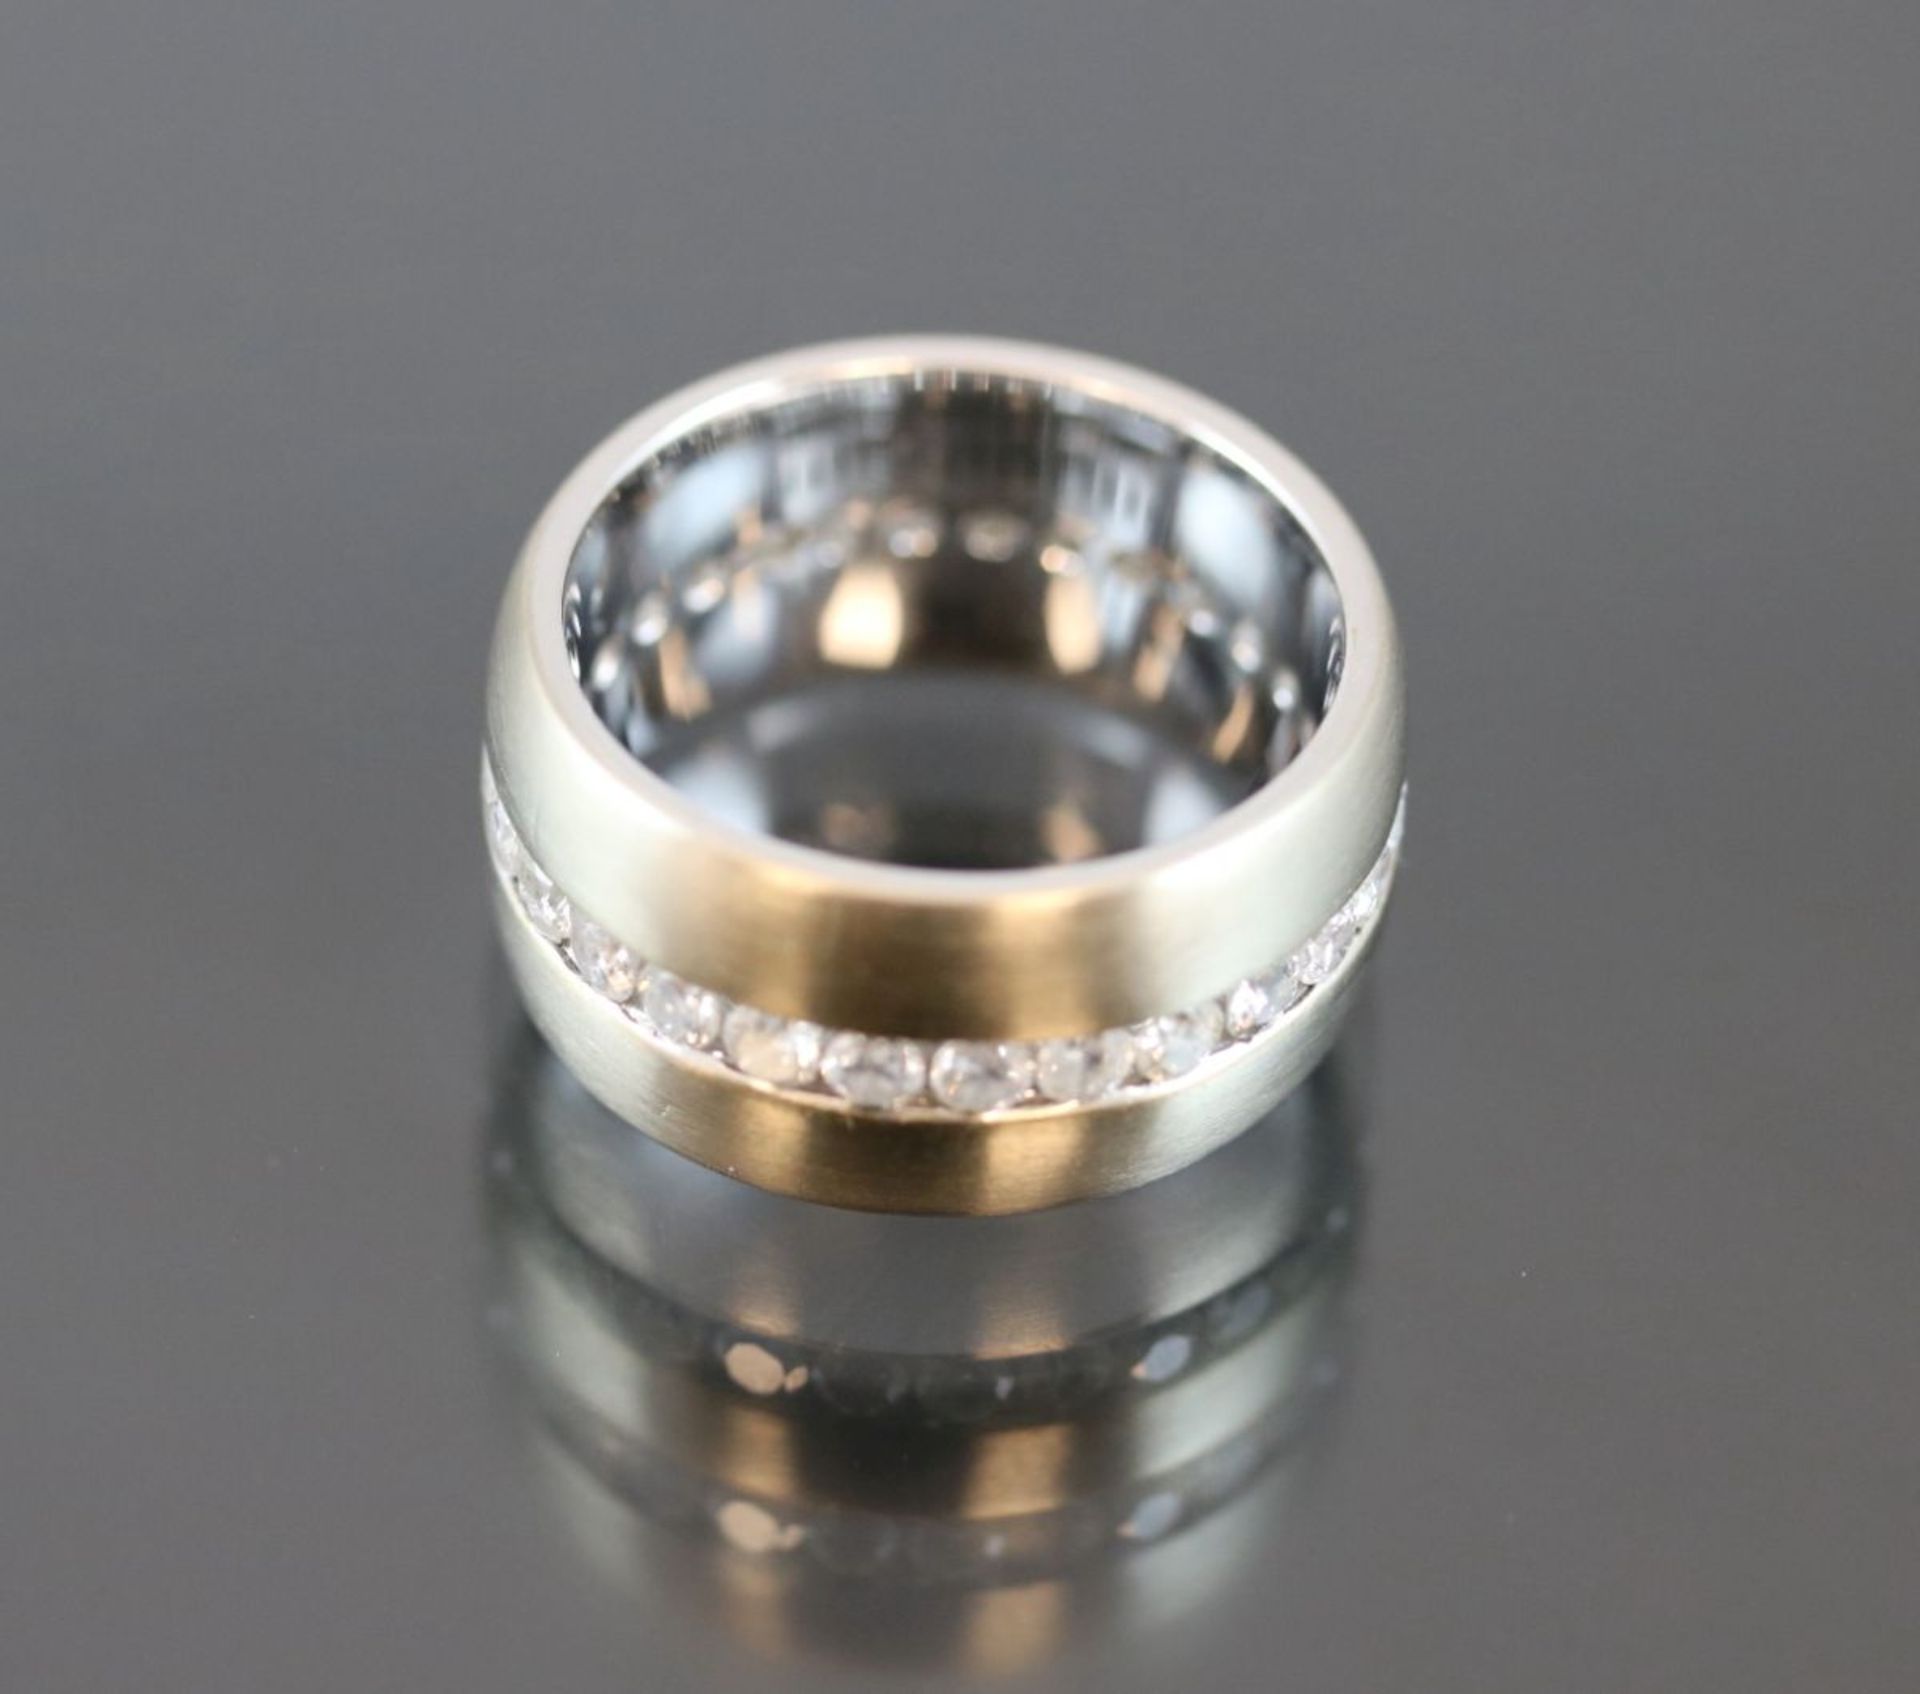 Diamant-Ring, 750 Weißgold12,5 Gramm 1,026 tcc/si, Ringgröße: 53